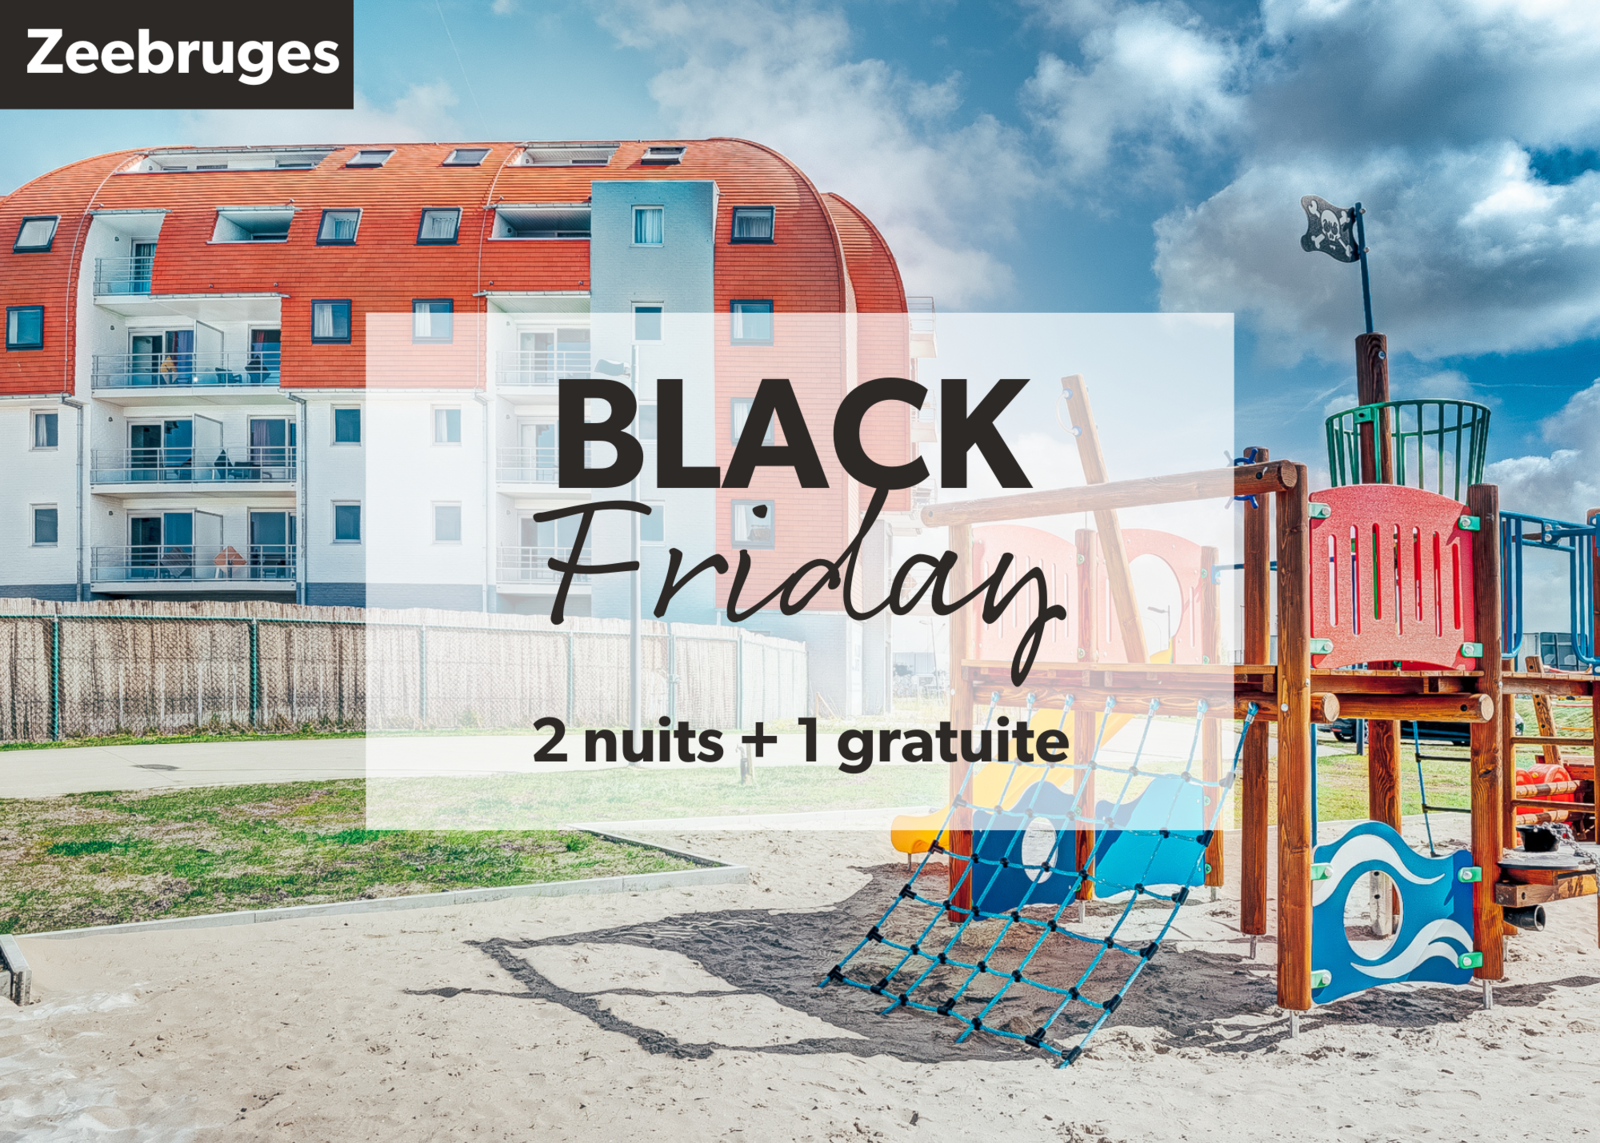 Zeebruges Black Friday